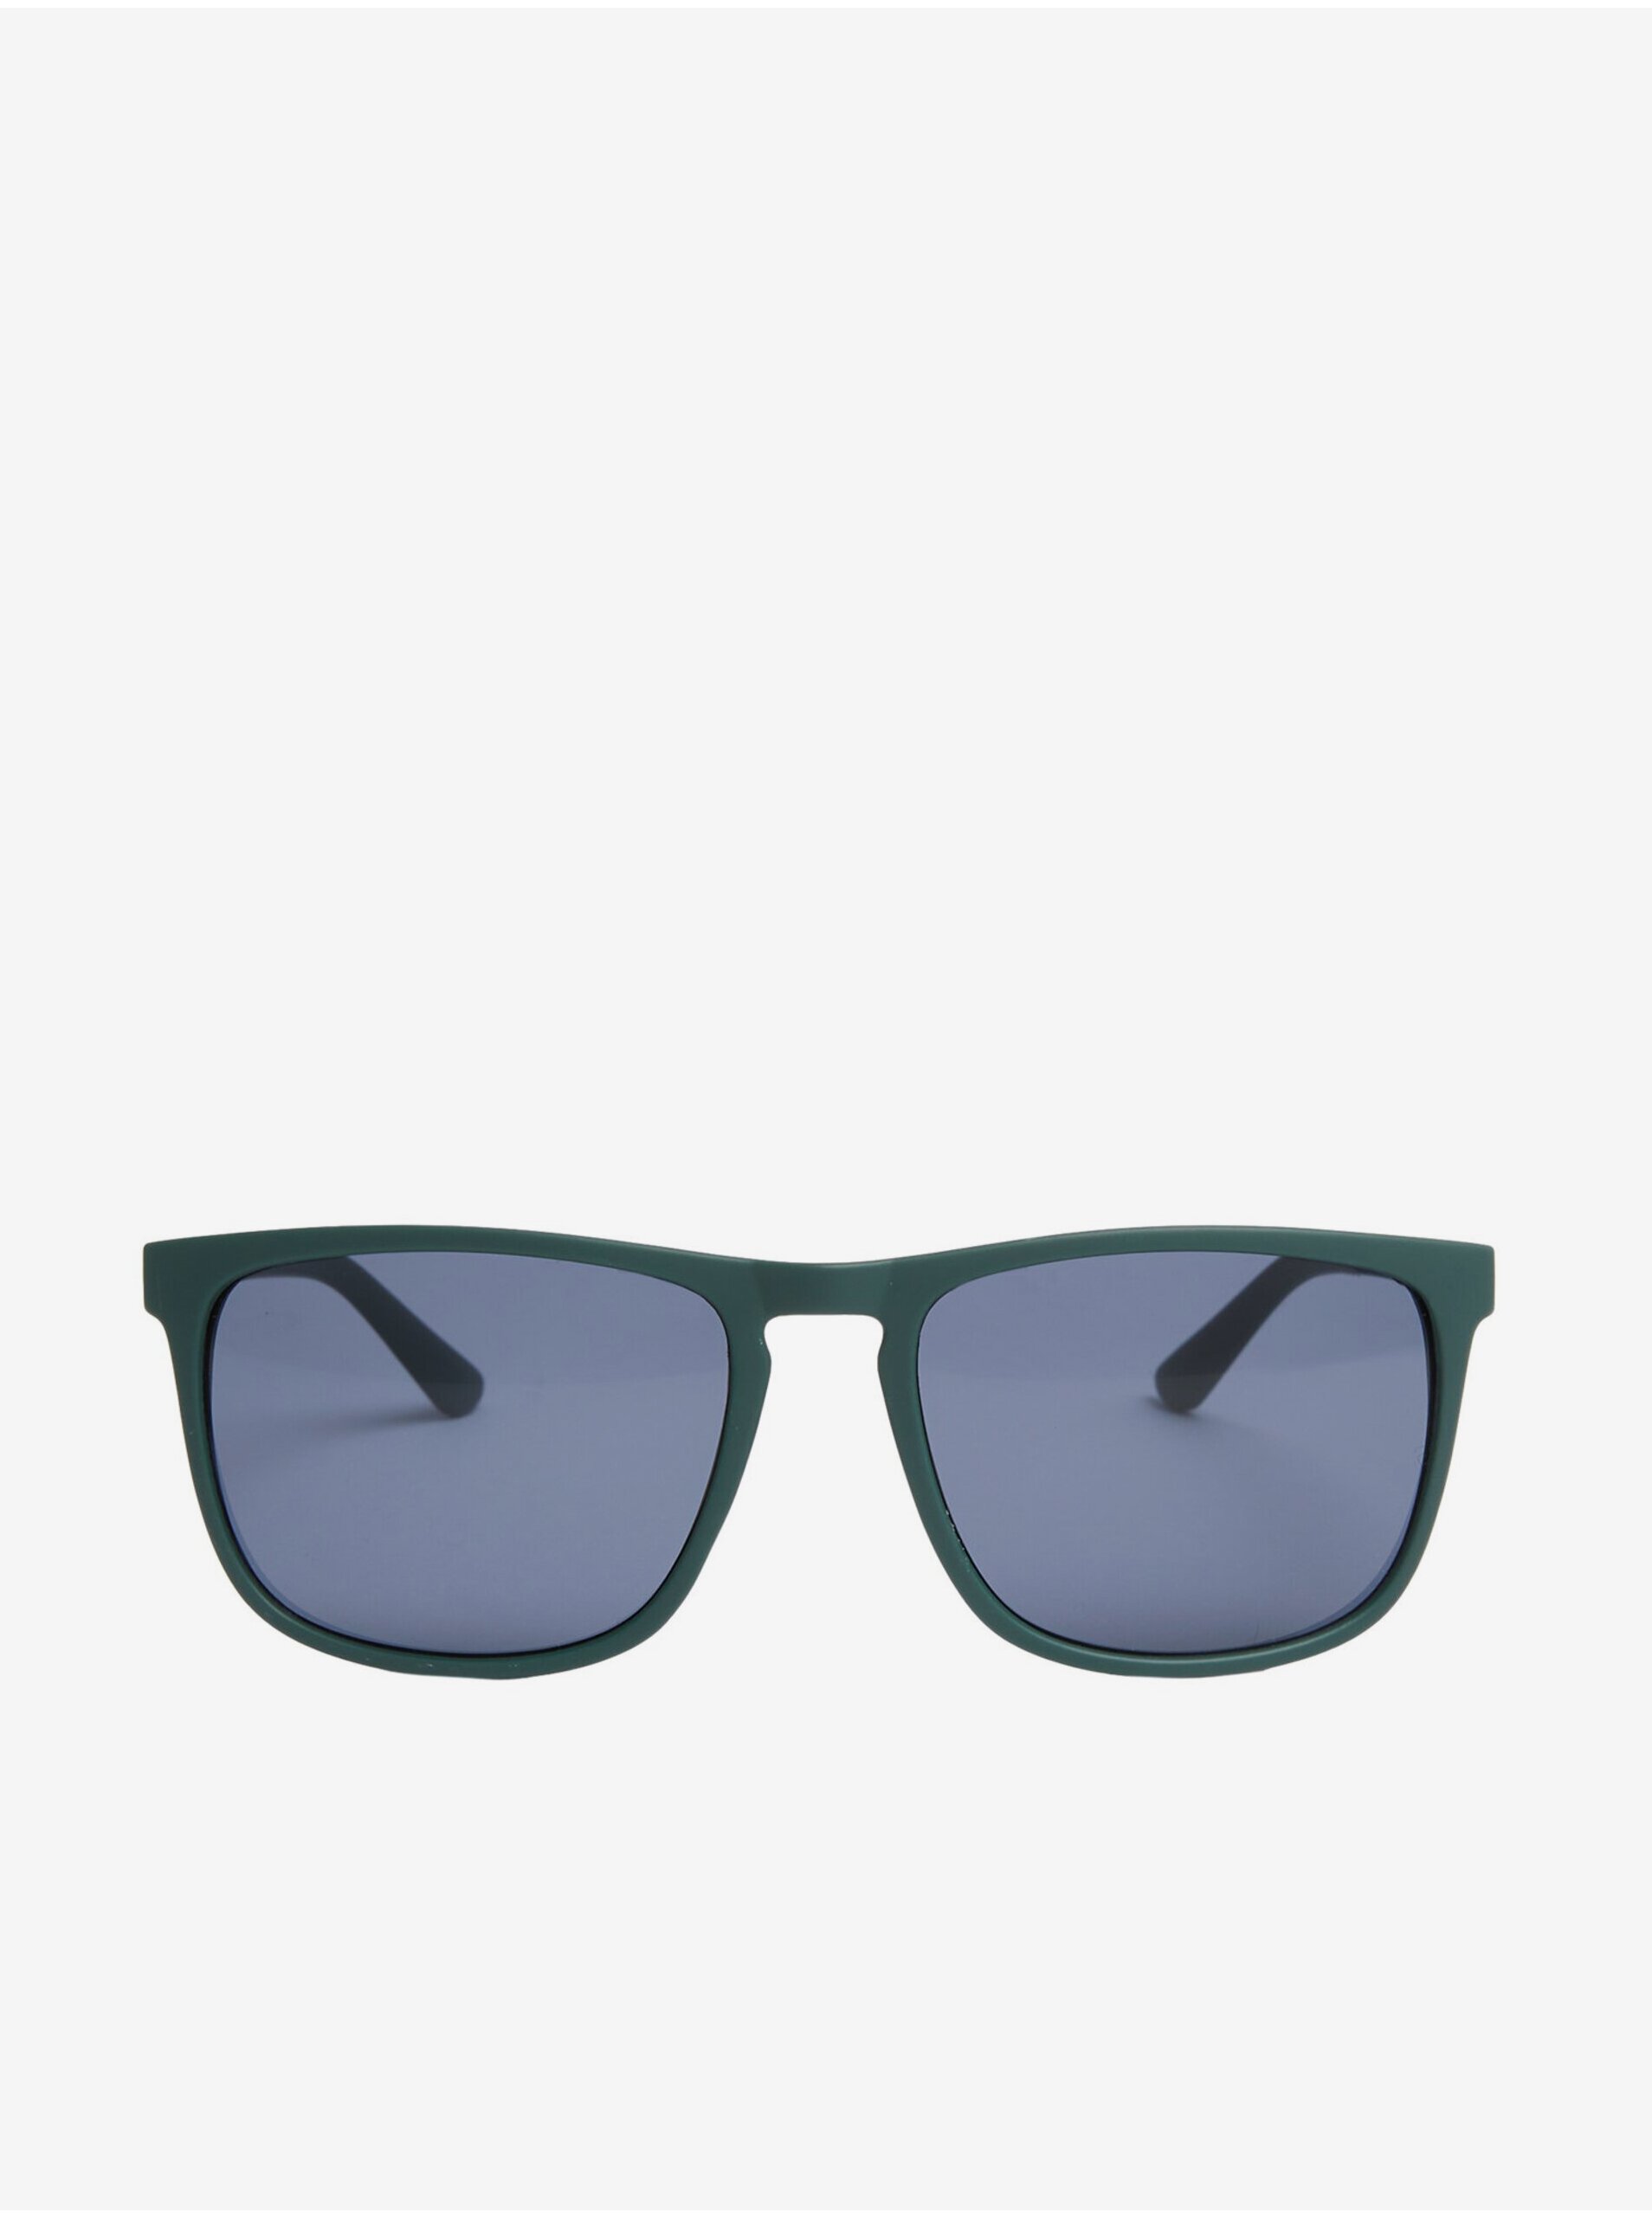 E-shop Tmavozelené pánske slnečné okuliare Marks & Spencer